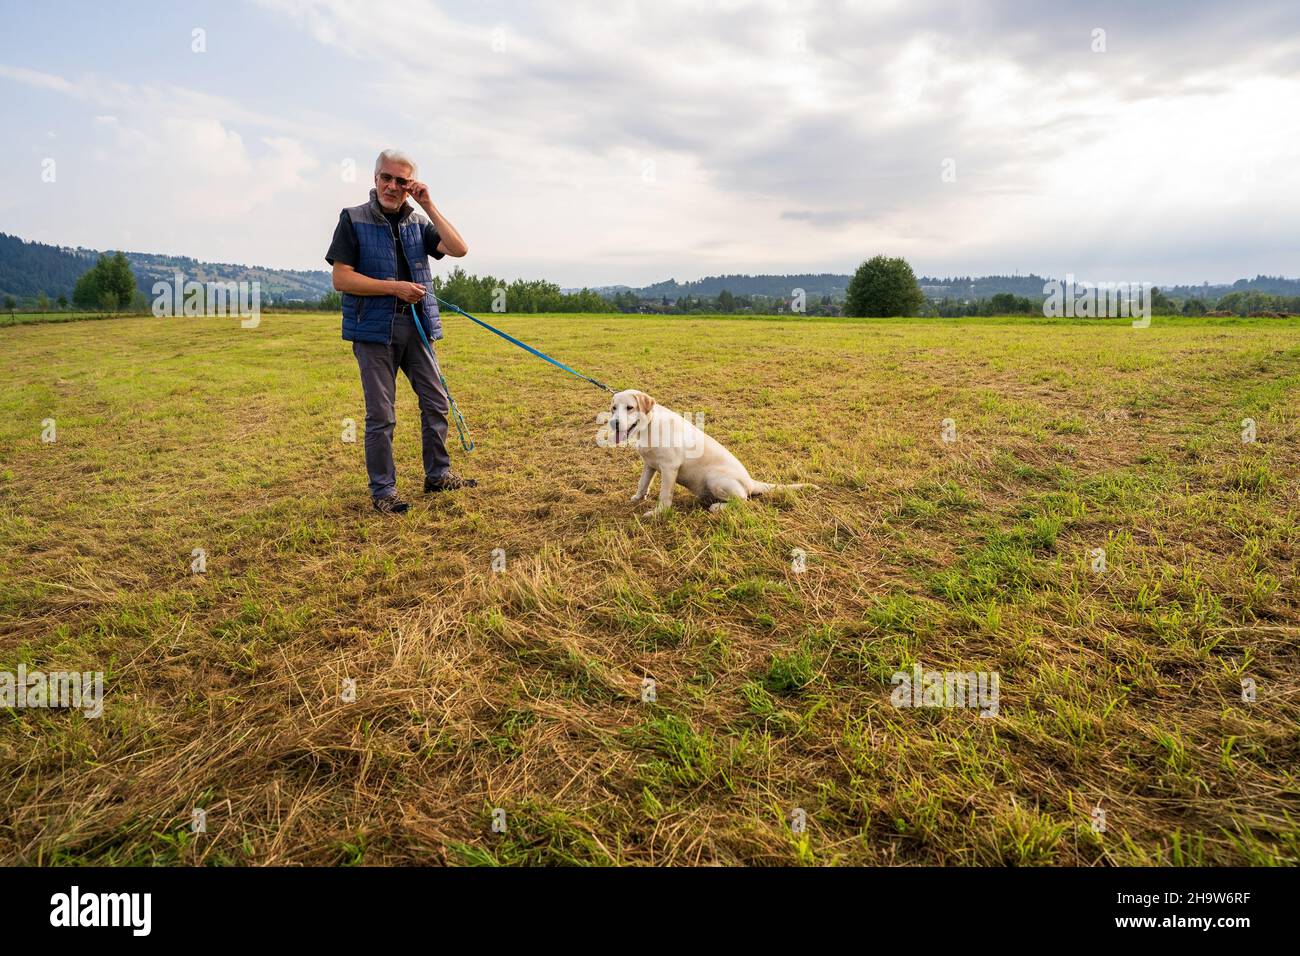 Zakopane, Polen - 15. August 2021: Mann steht in einem grünen Feld auf dem Land und hält eine Schnur, die an einen goldenen labrador-Retriever-Hund gebunden ist Stockfoto